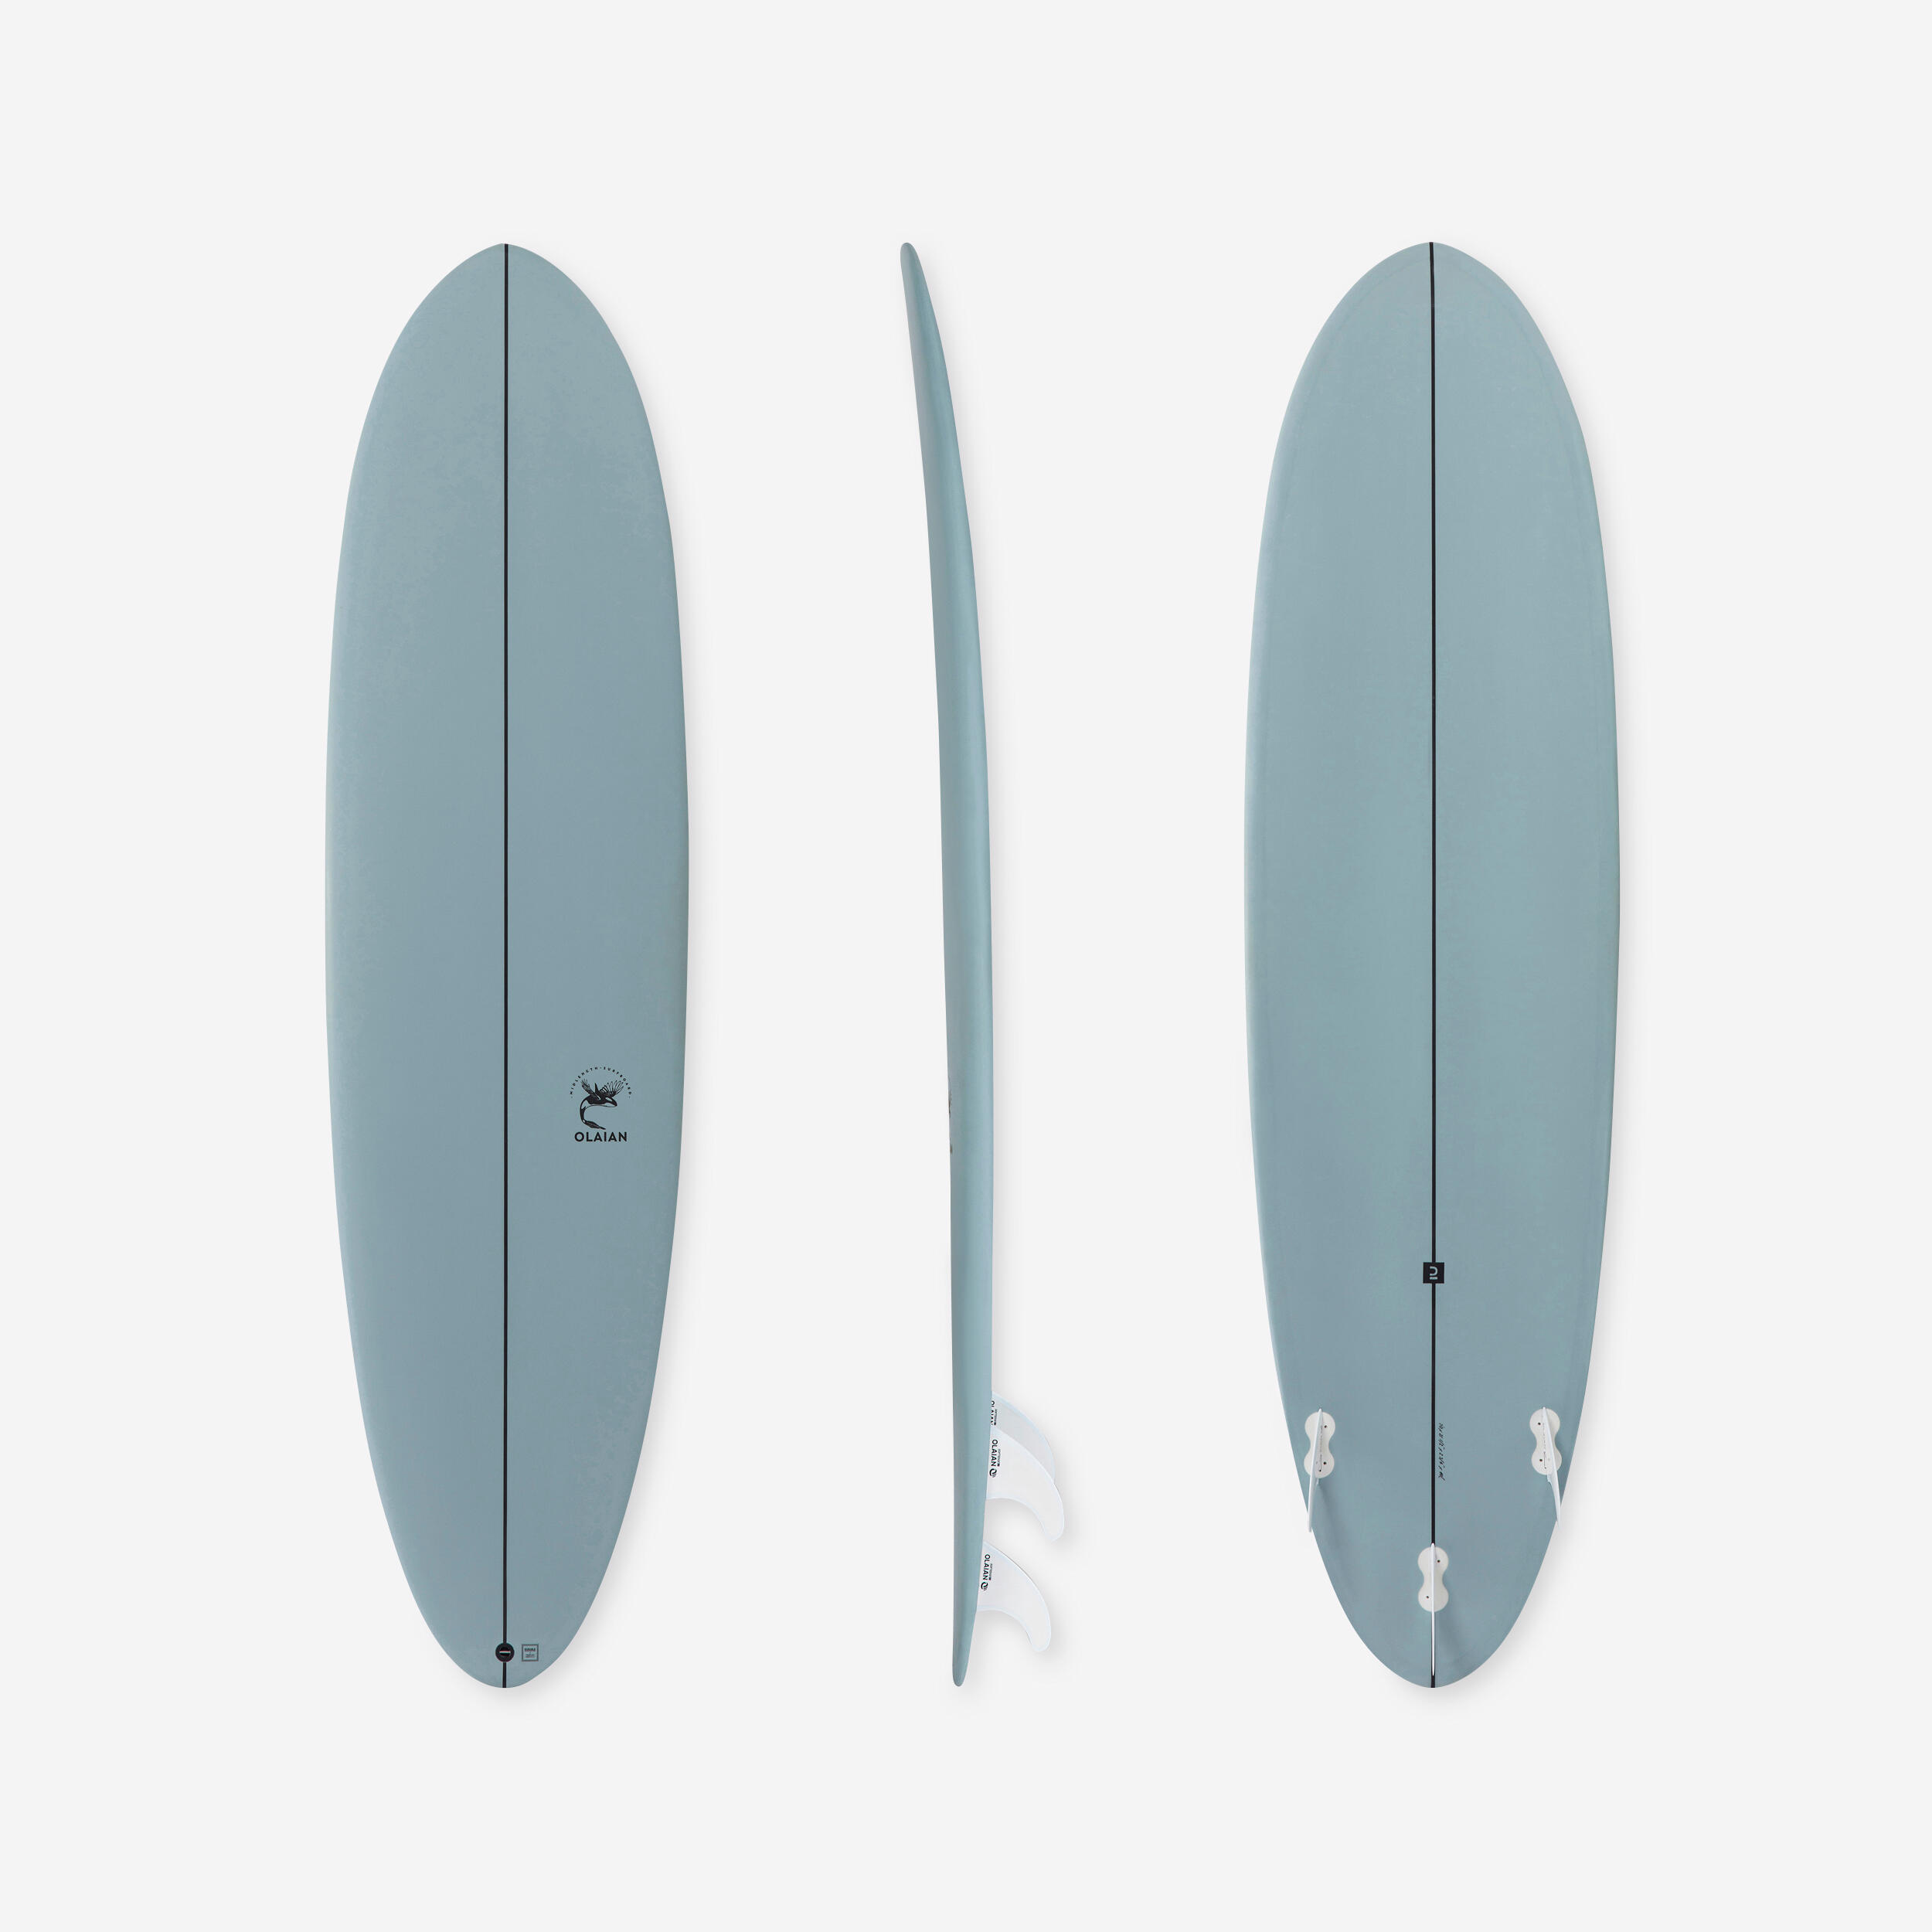 Placă spumă surf 500 7′ 3 înotătoare decathlon.ro